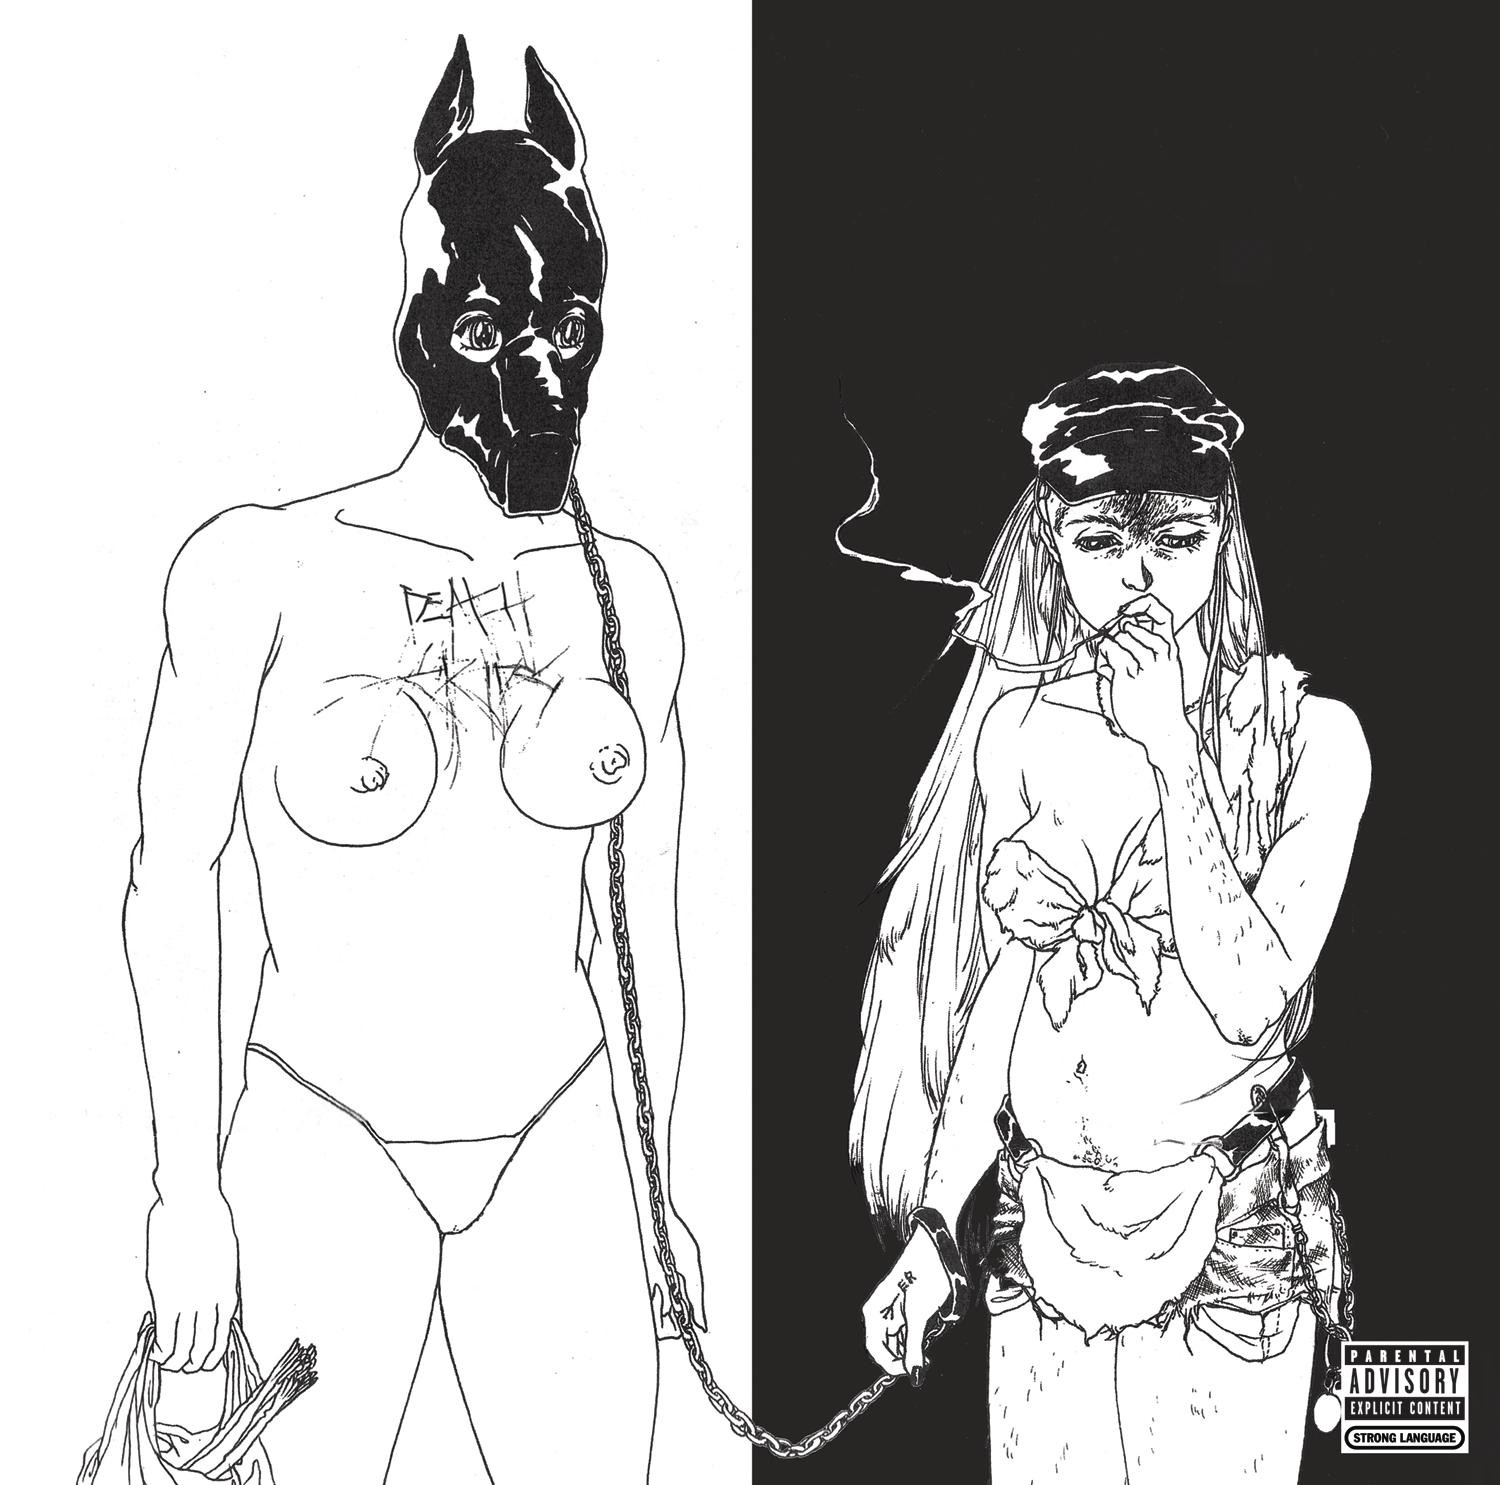 Death Grips - The Money Store  LP